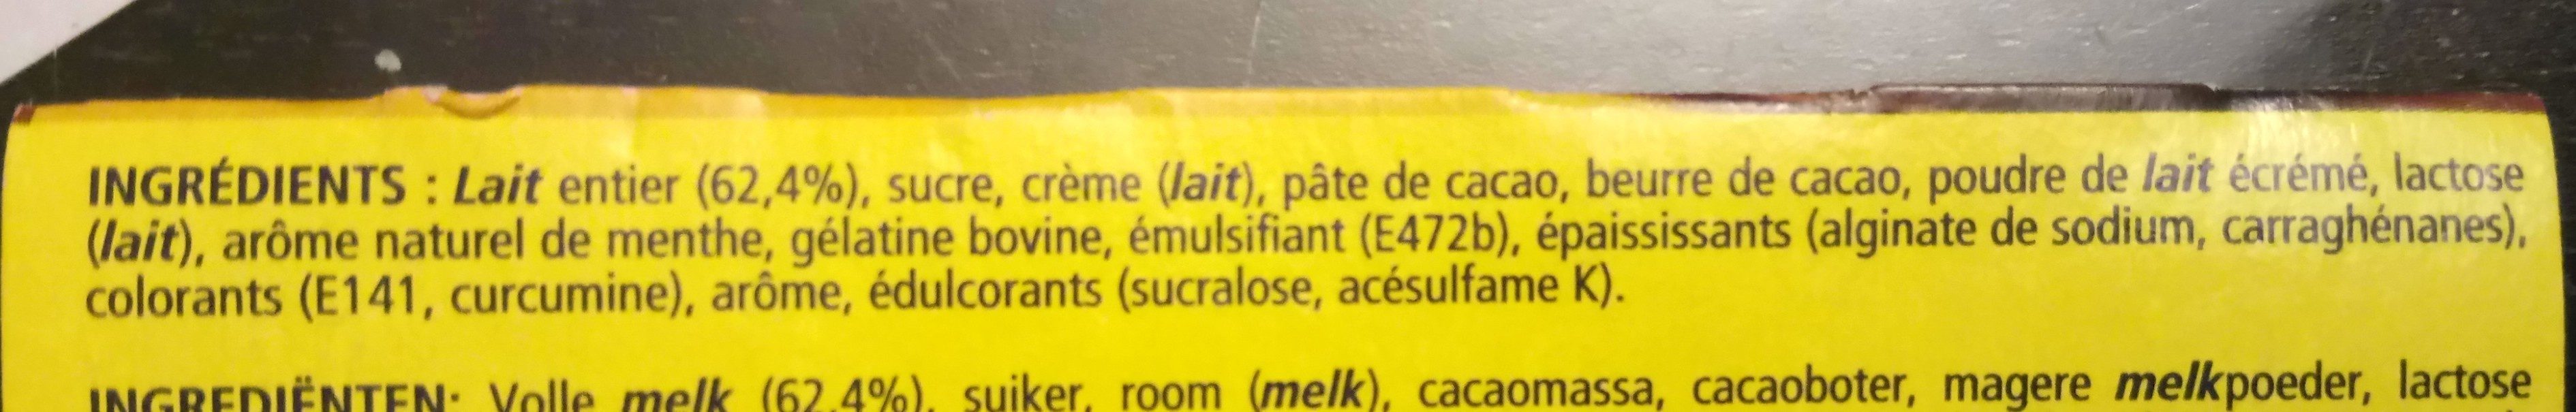 Feuilleté de Mousse Menthe - Ingredients - fr